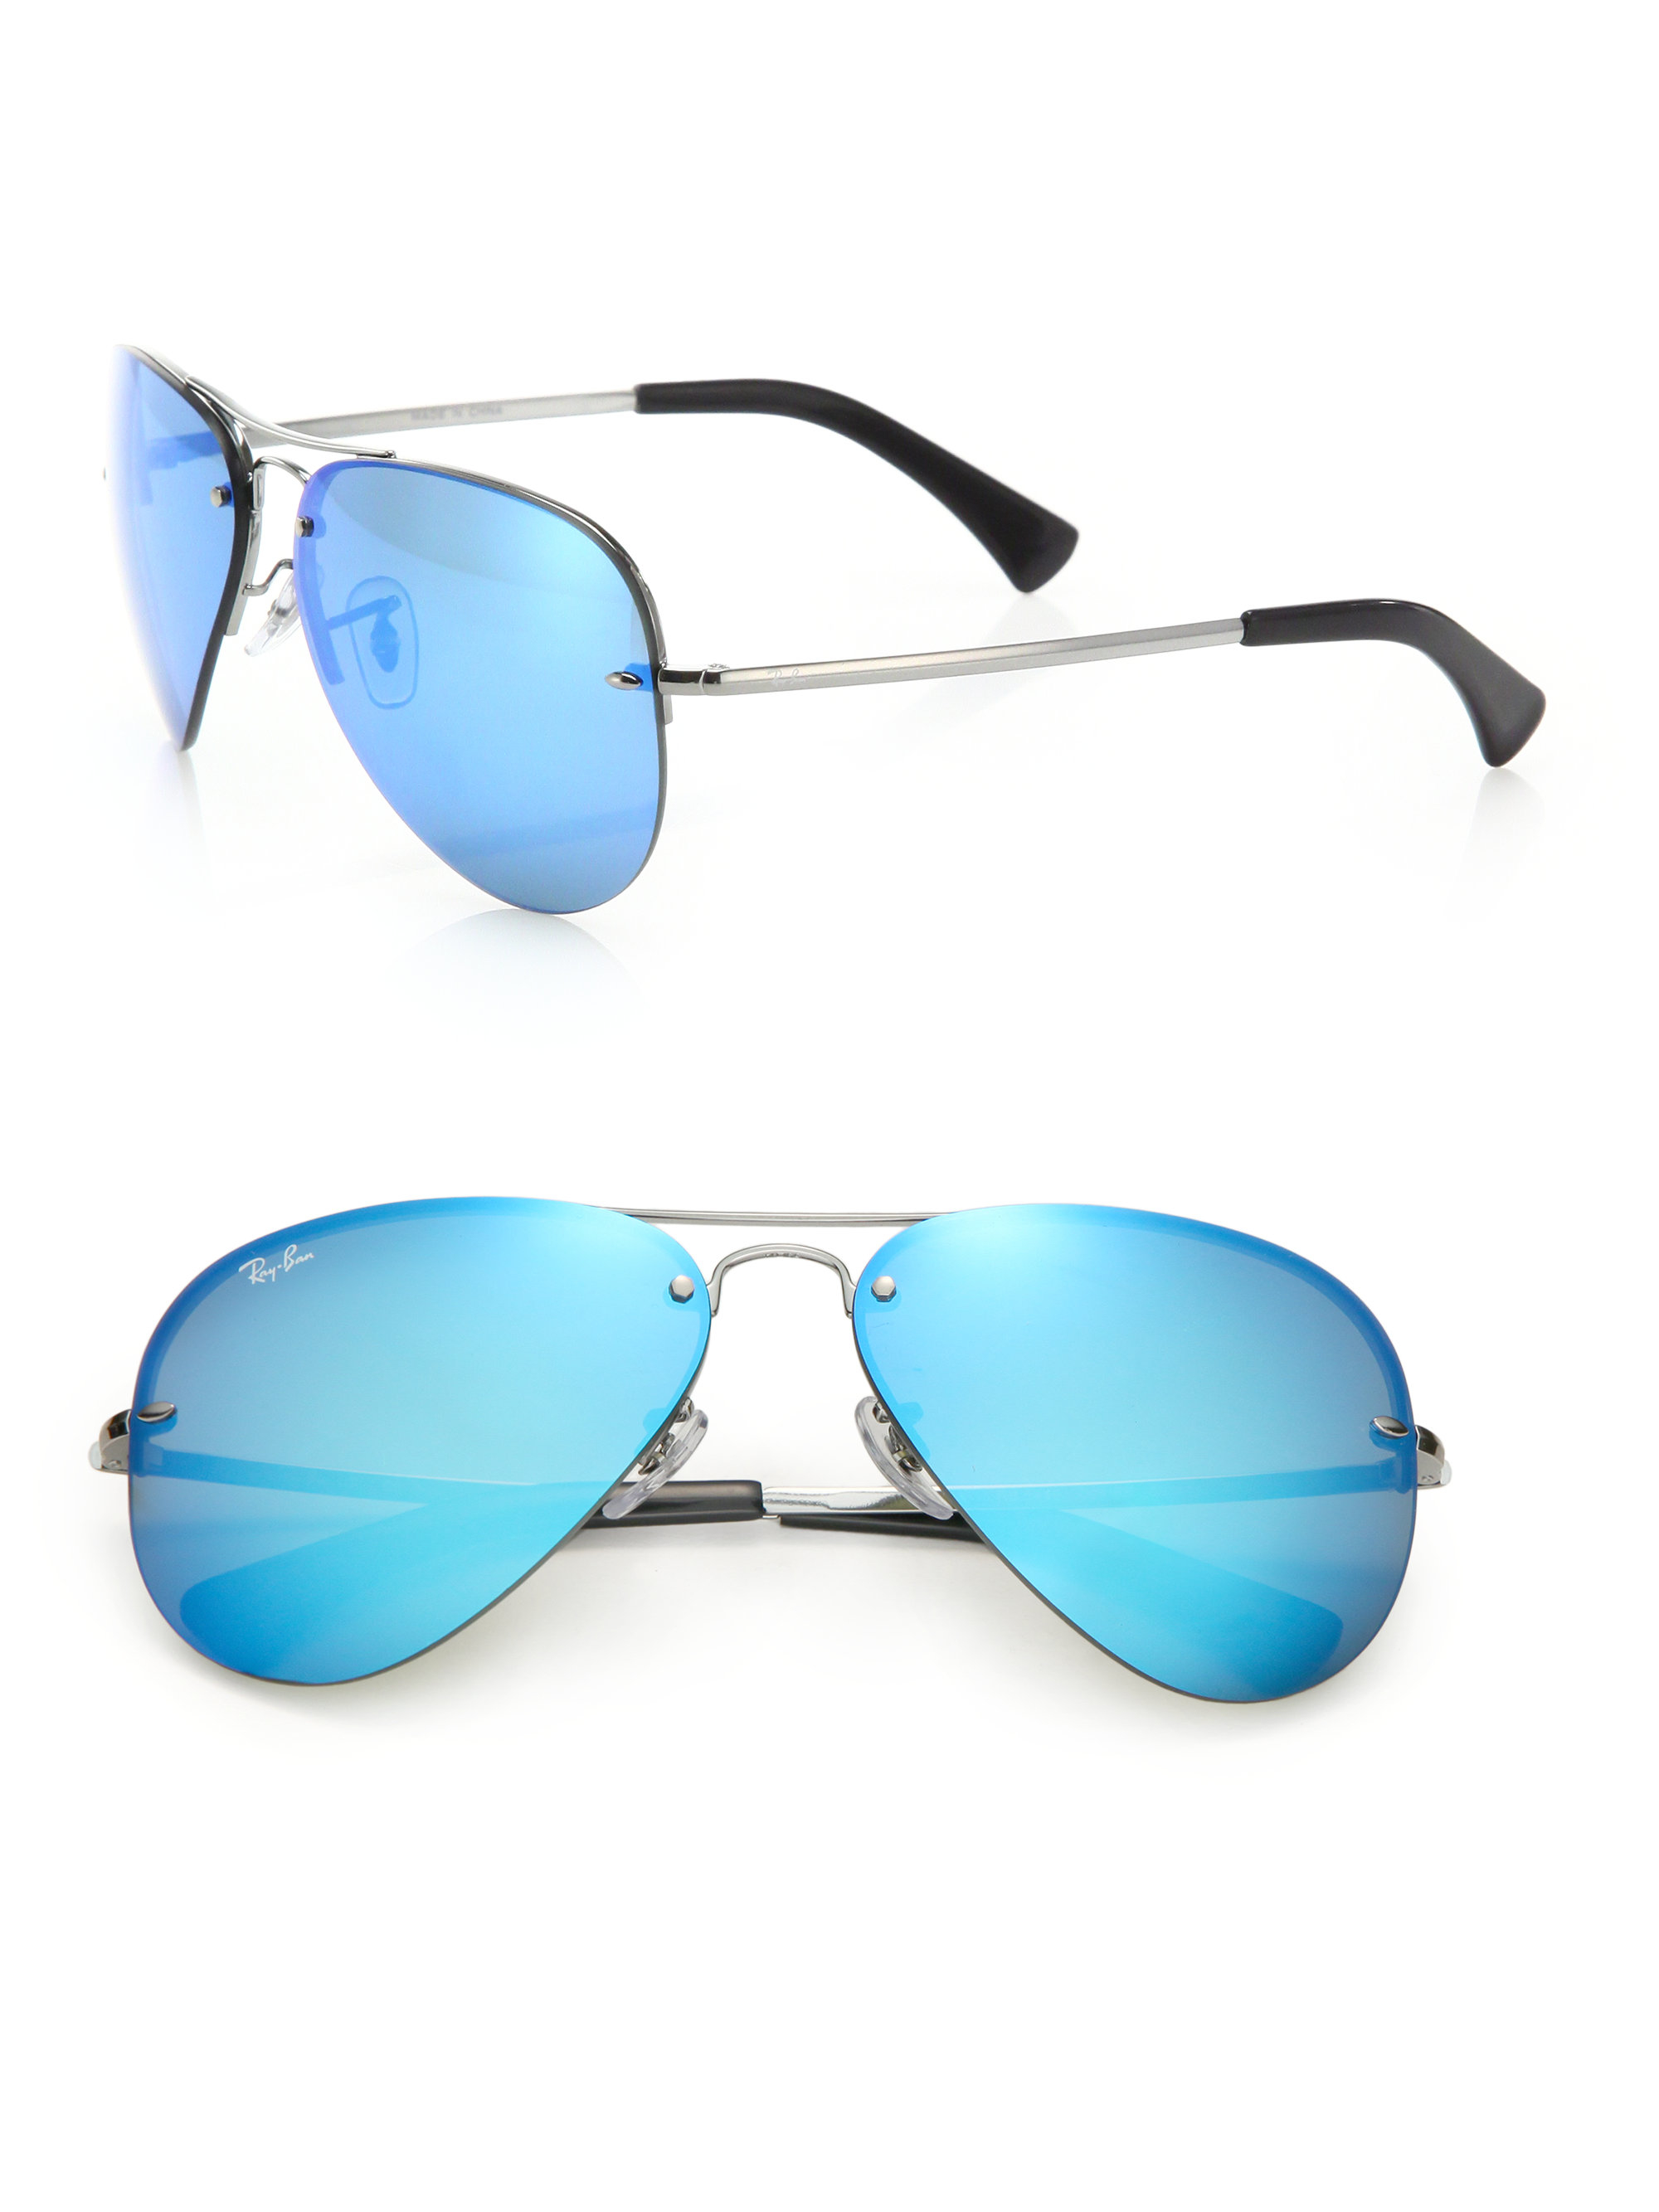 Blue Aviator Sunglasses For Men | www.tapdance.org